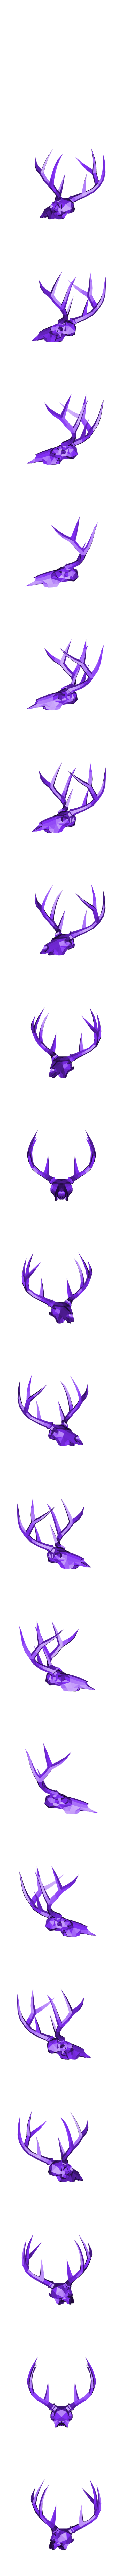 Deer Skull craft.obj Download OBJ file Low poly Deer Skull • Design to 3D print, vitascky